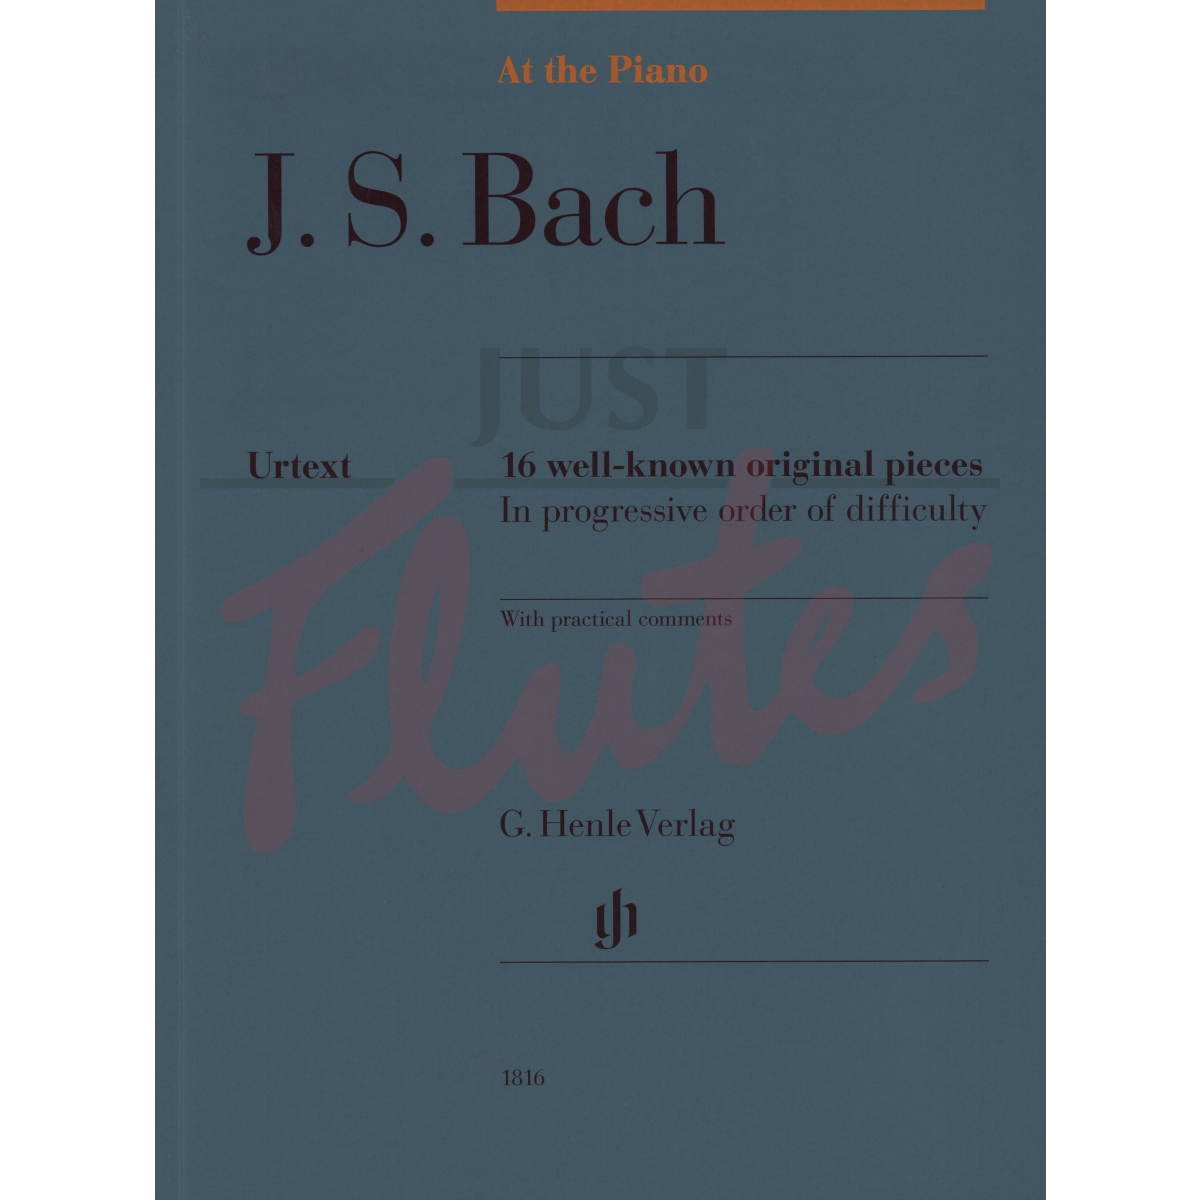 At the Piano - J.S. Bach